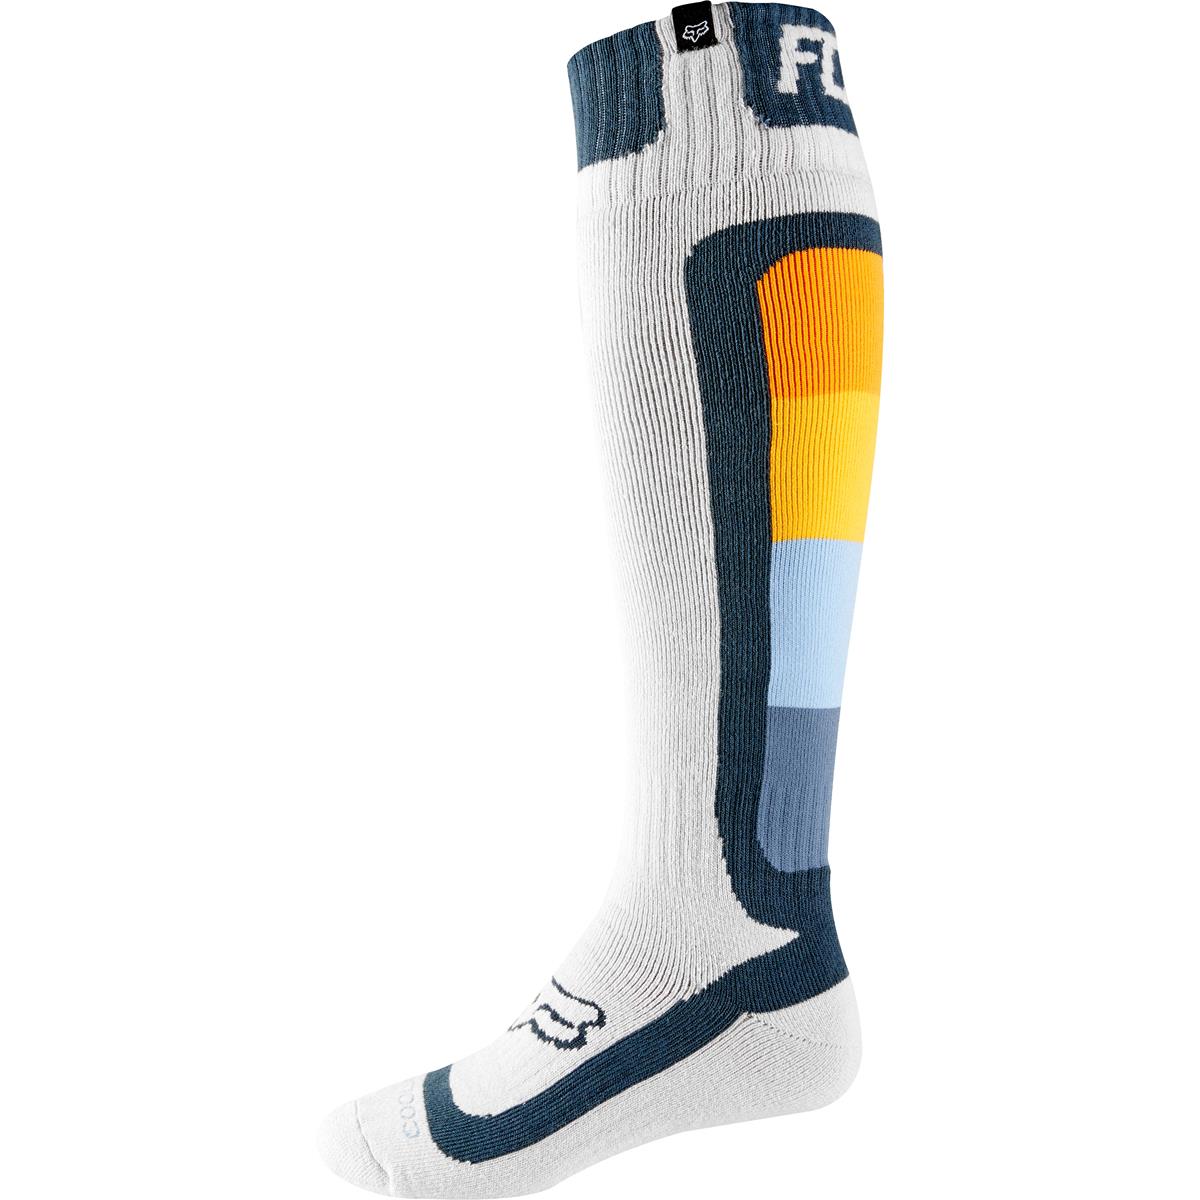 Fox Socks Coolmax Thin Murc - Light Grey